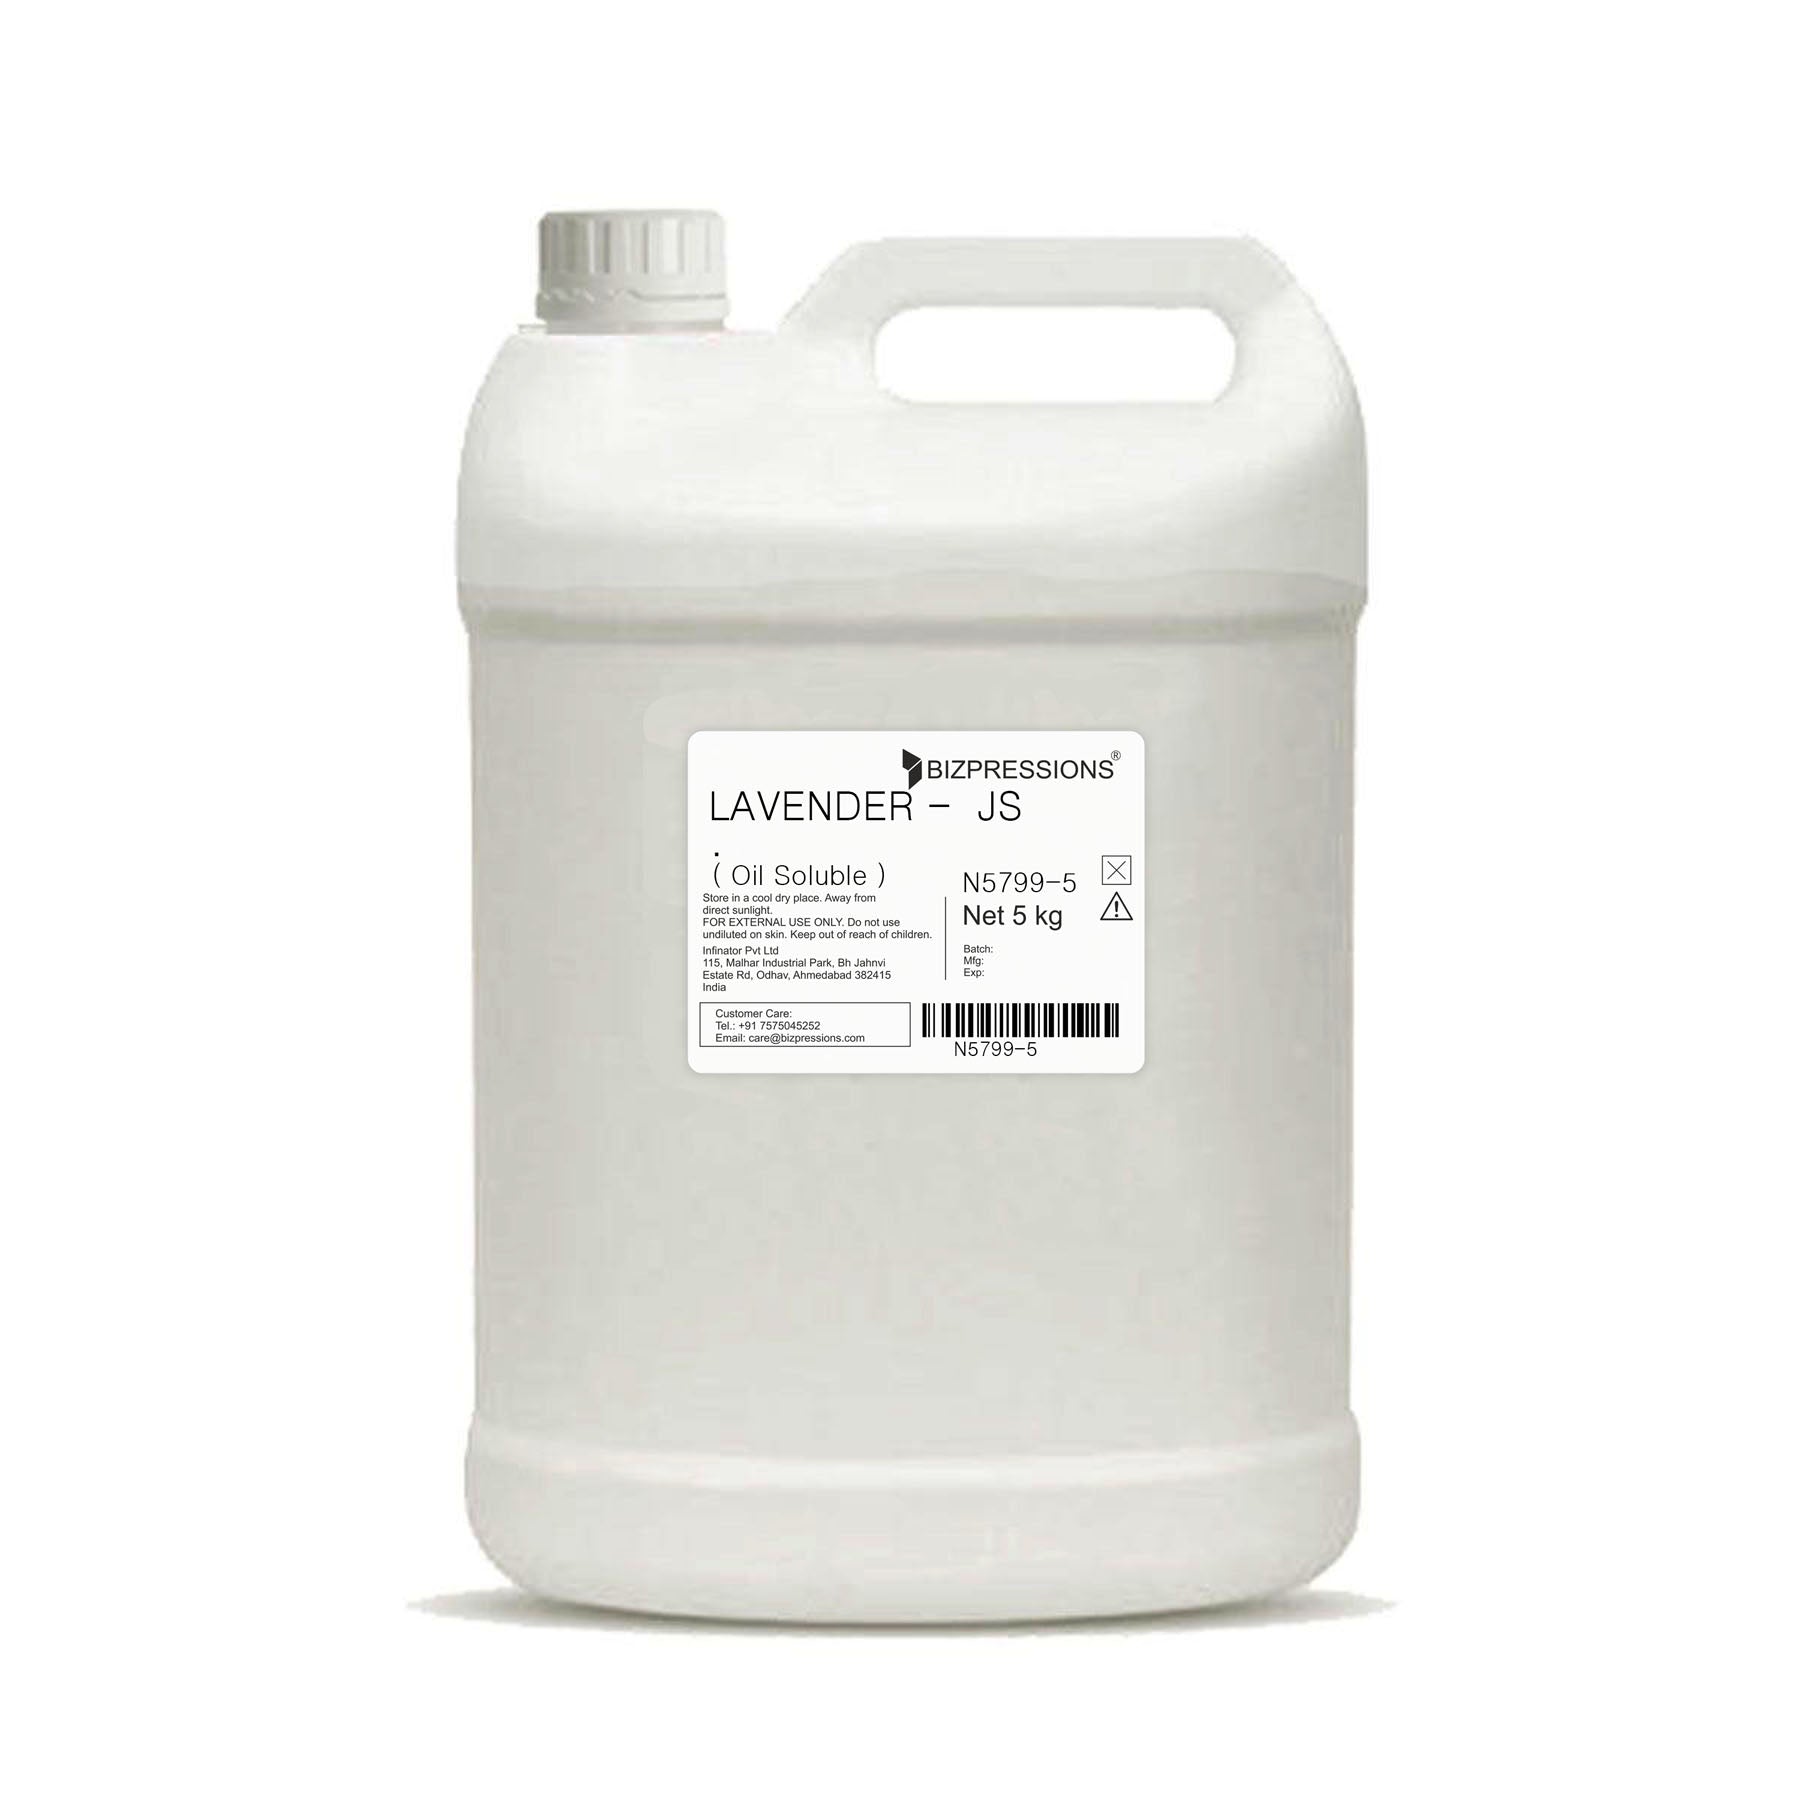 LAVENDER - JS - Fragrance ( Oil Soluble ) - 5 kg